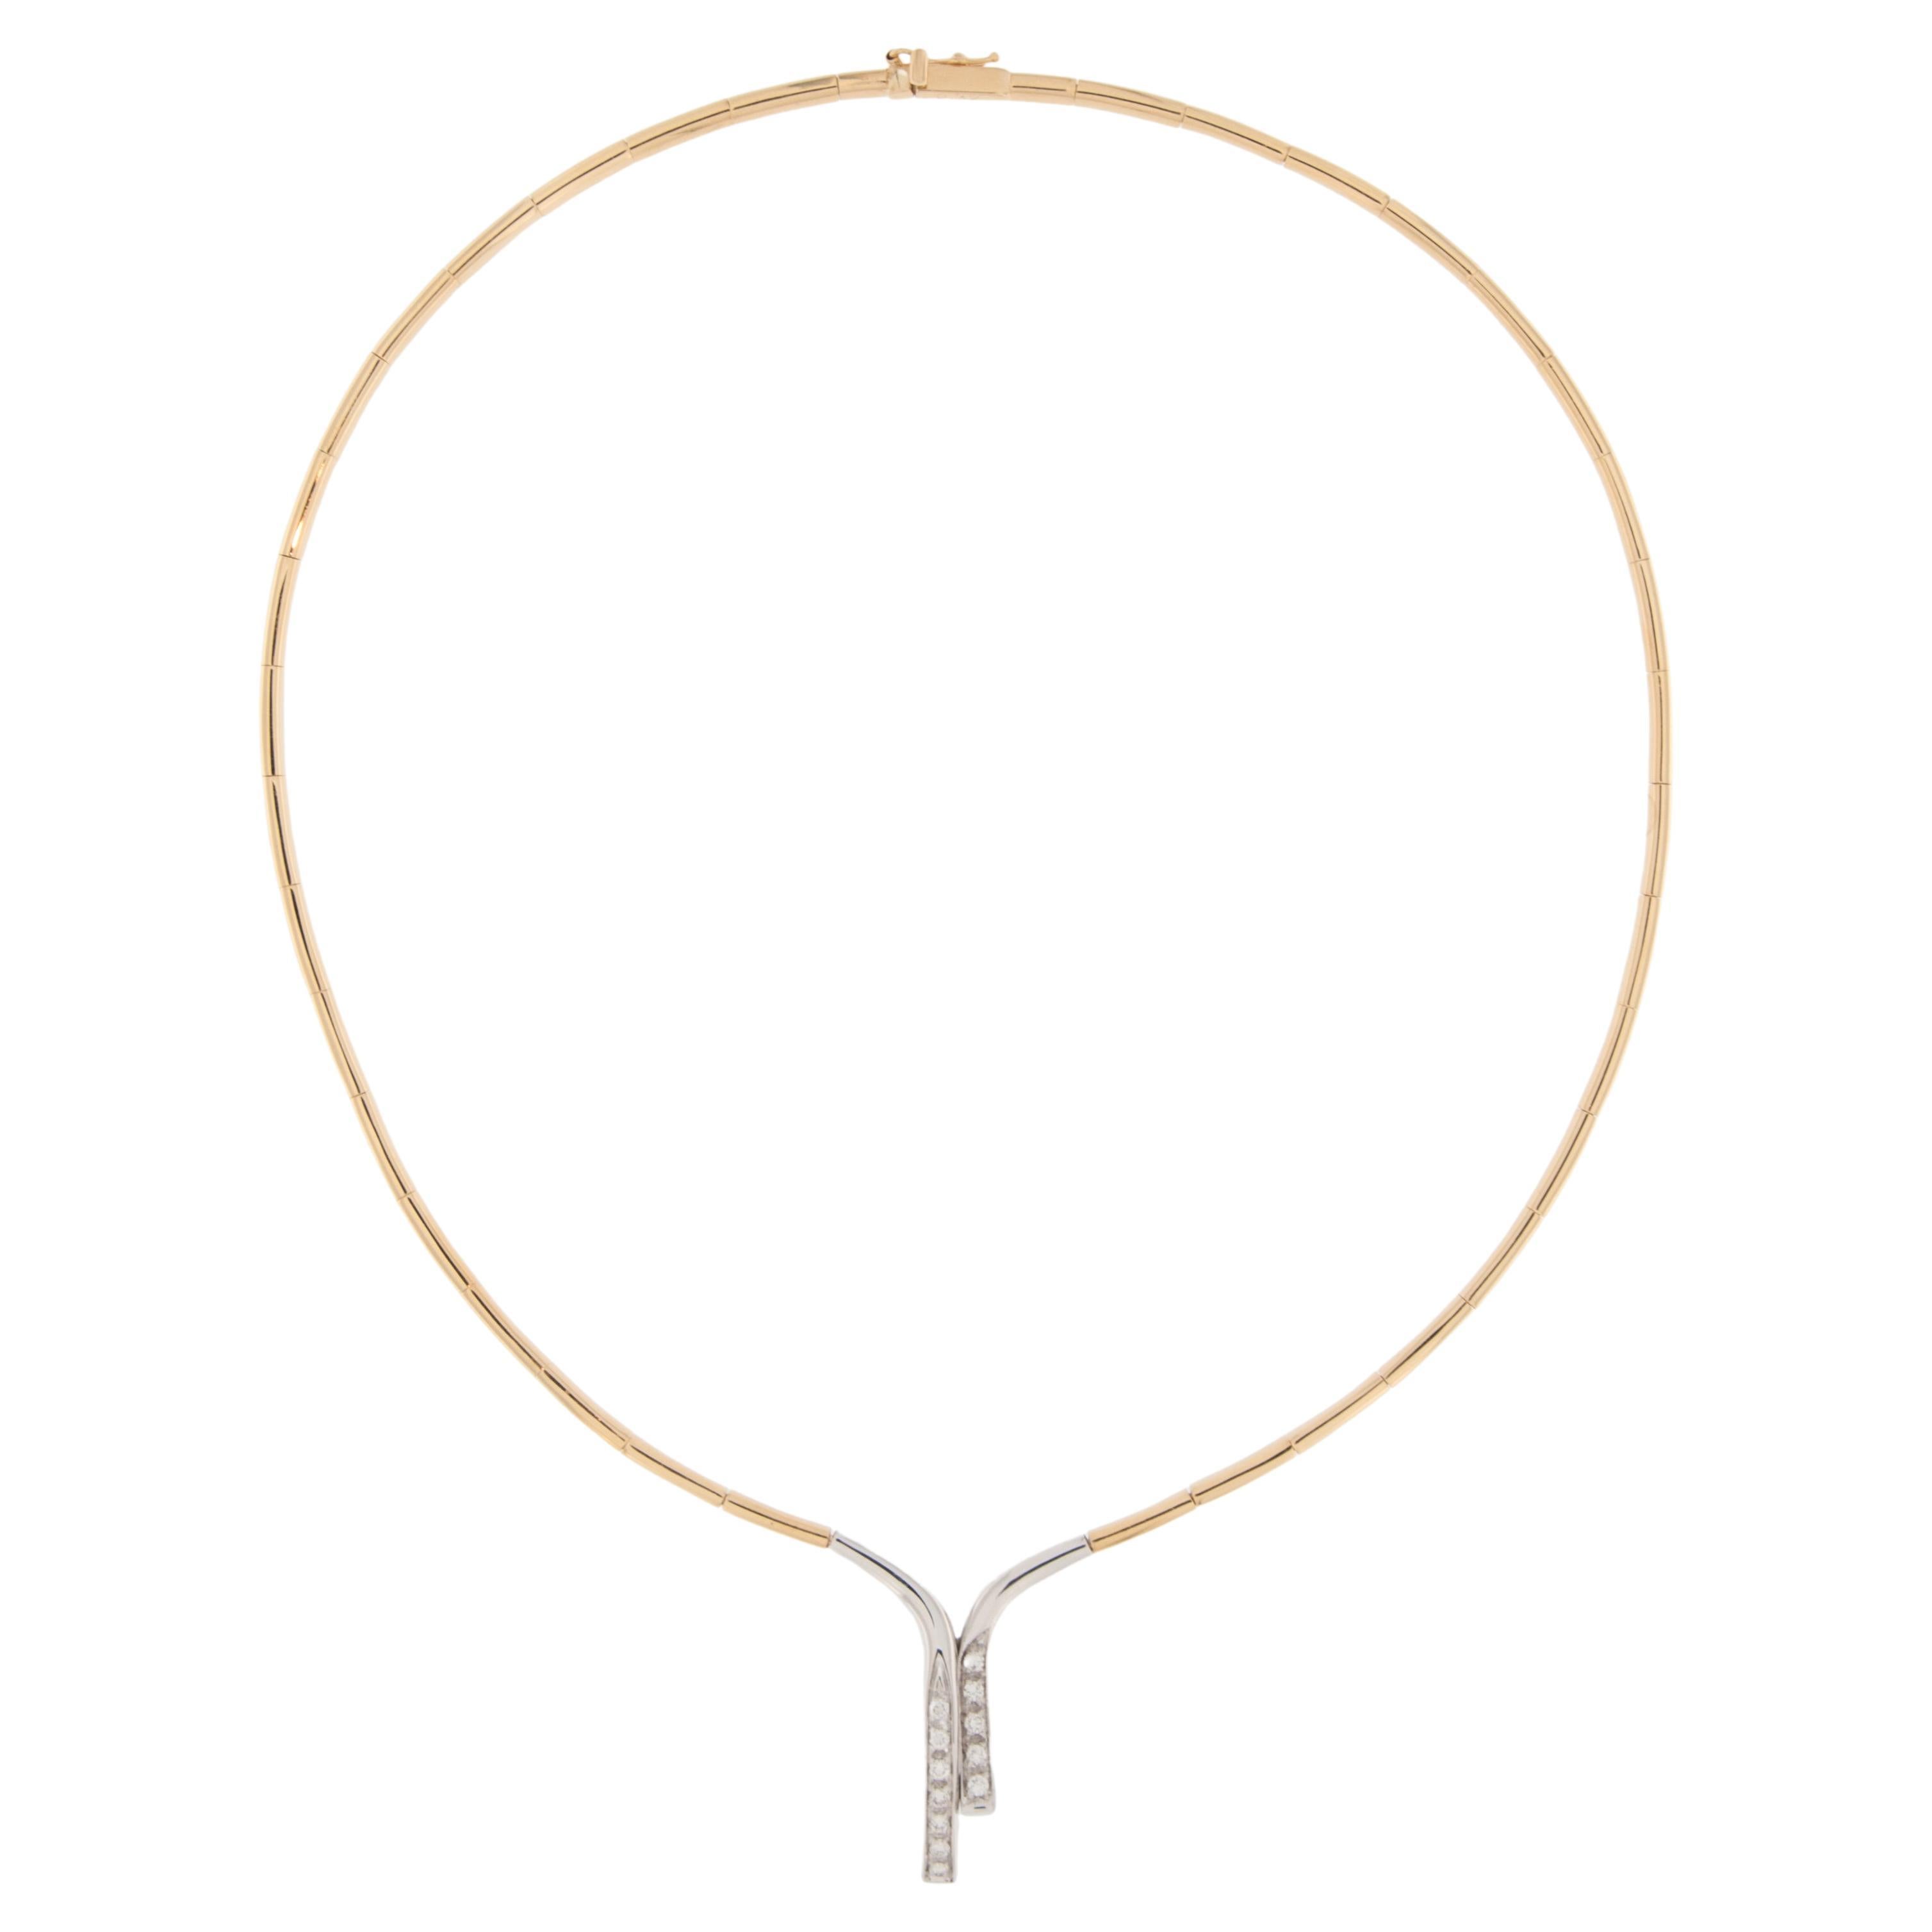 French 18 karat Gold Rigid Necklace with Diamonds